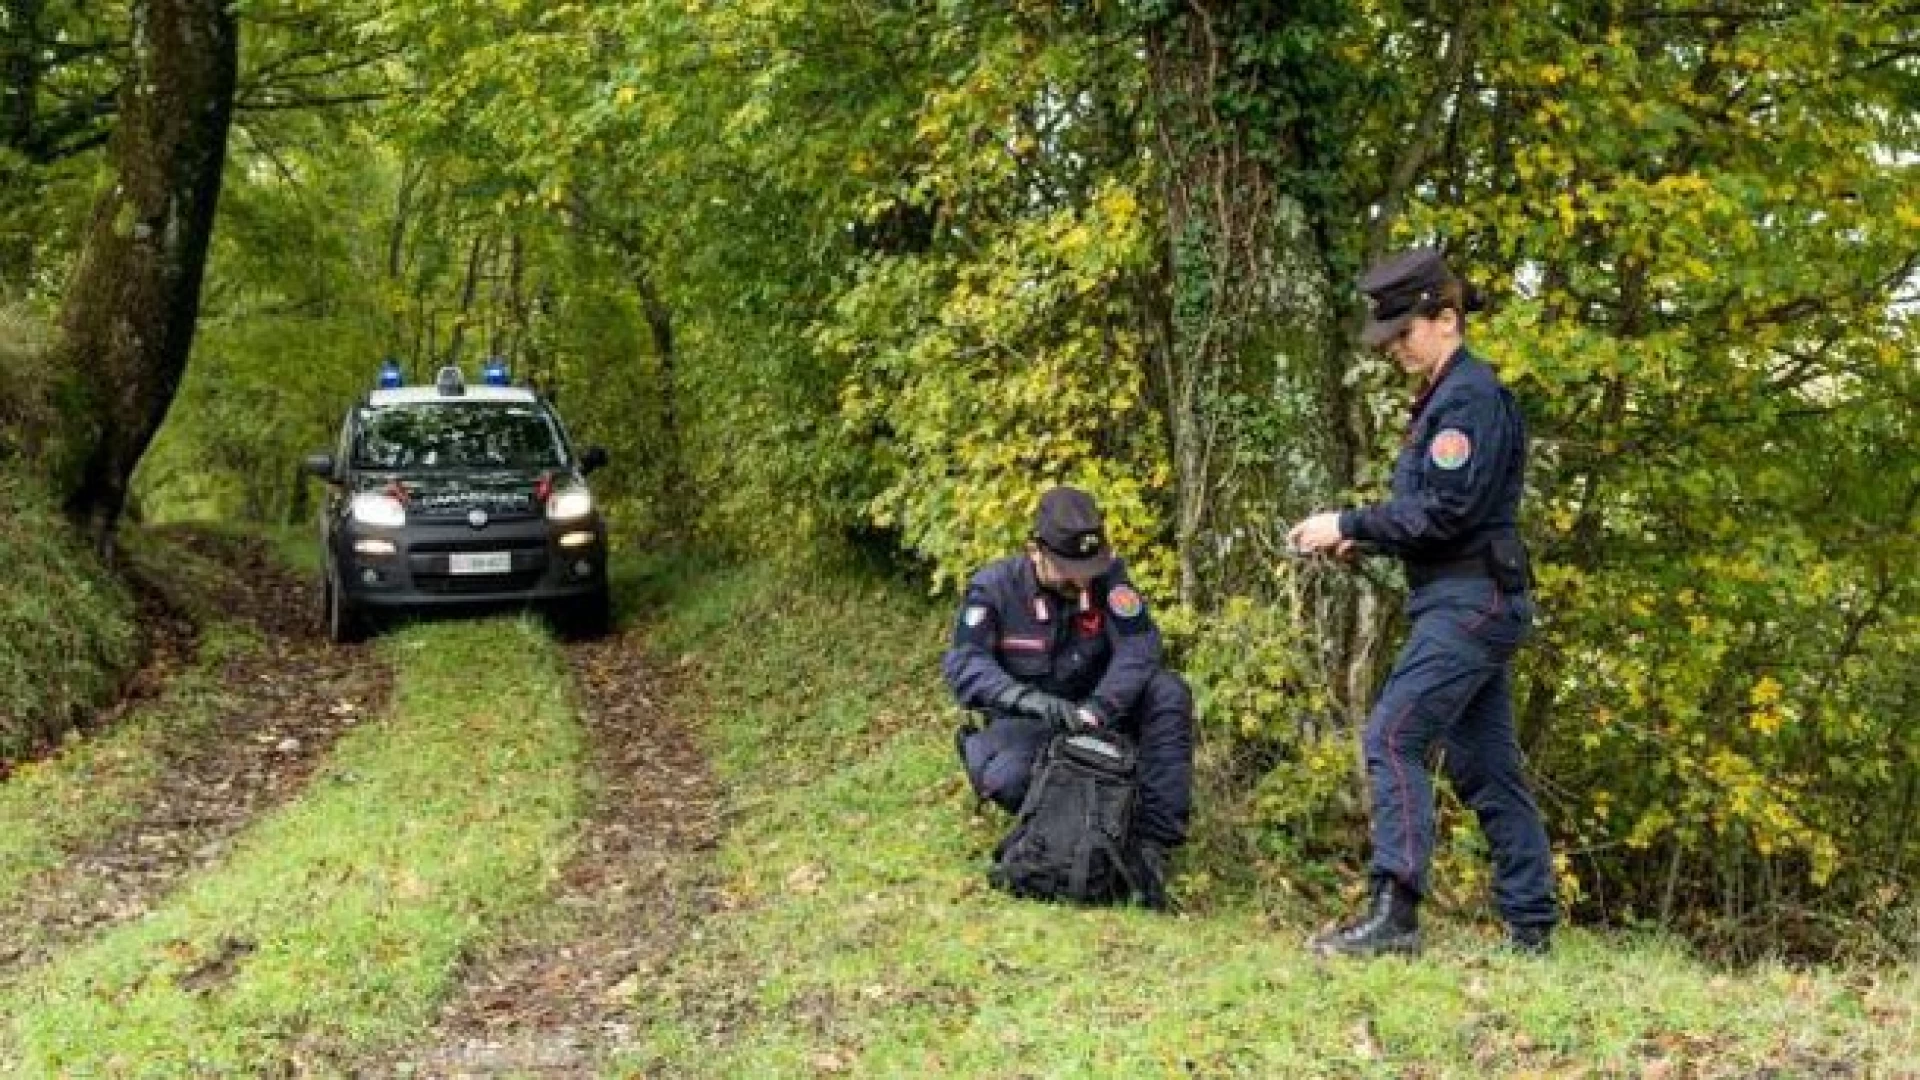 Nessun arresto e confisca delle armi per due cacciatori fermati dai Carabinieri Forestali di Casacalenda. I malcapitati difesi dall’avvocato Marina Perna di Venafro.